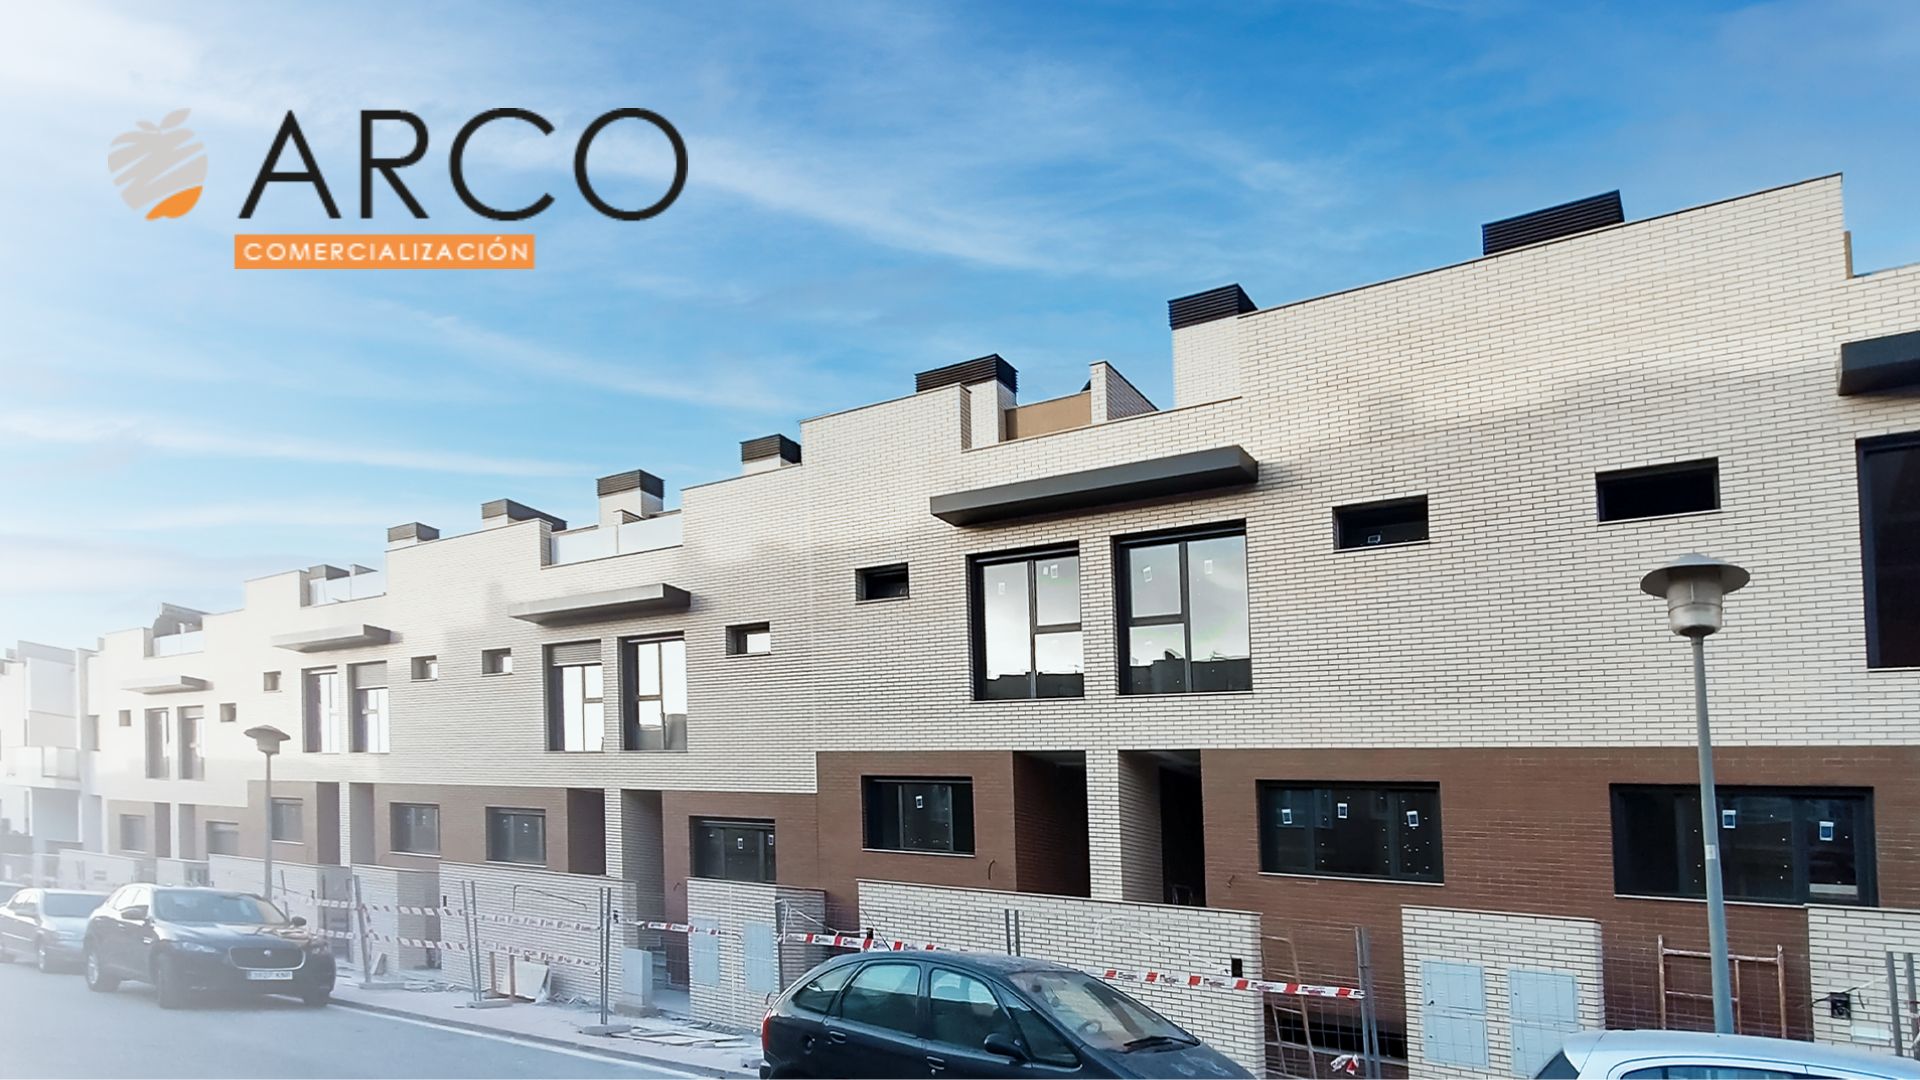 Arco comercializa las últimas viviendas de Citerea Residencial, 40 viviendas unifamiliares en Almería